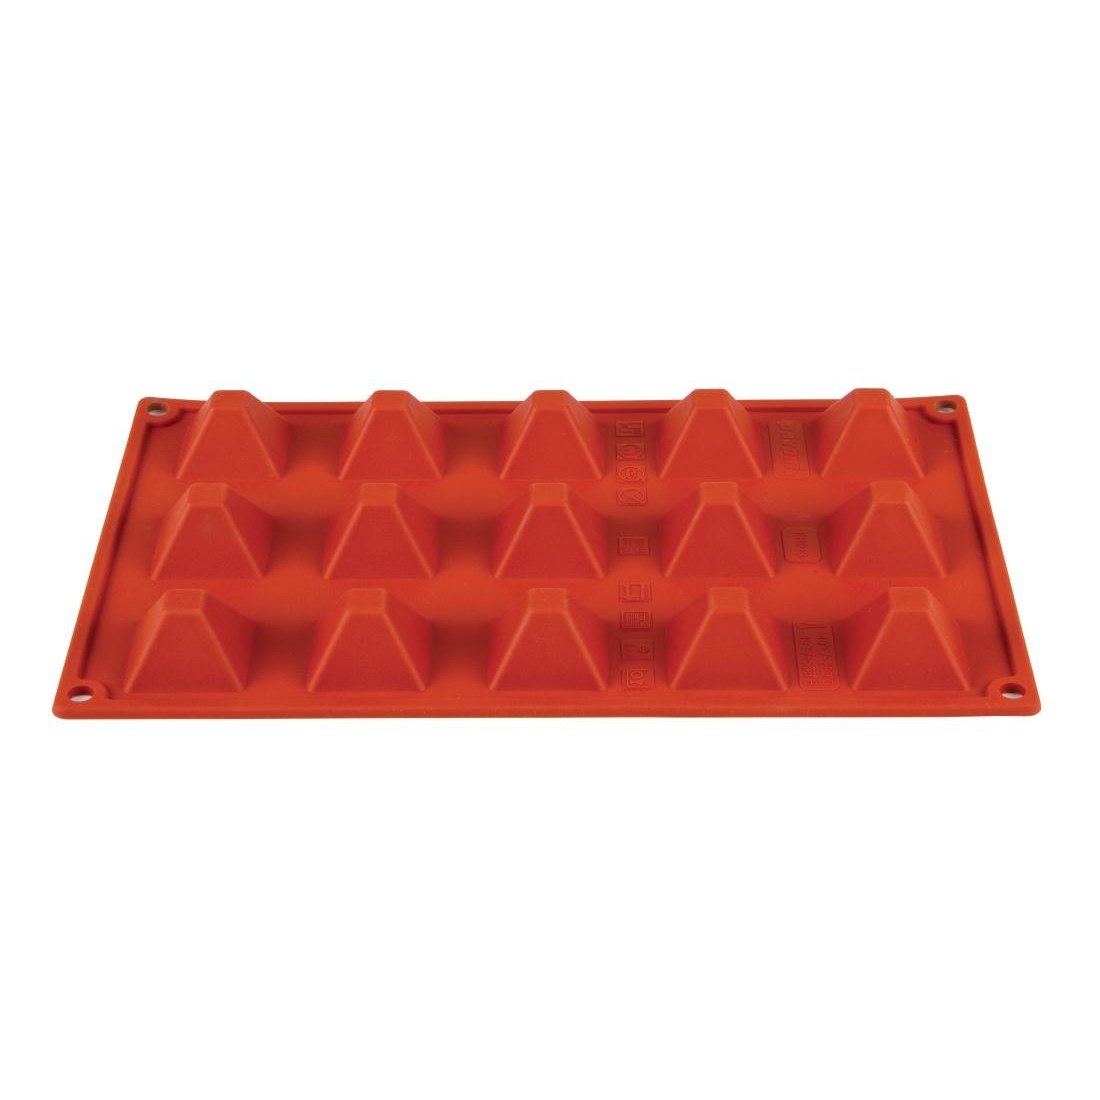 Red Silicone Brioche Mold - 6 Compartments